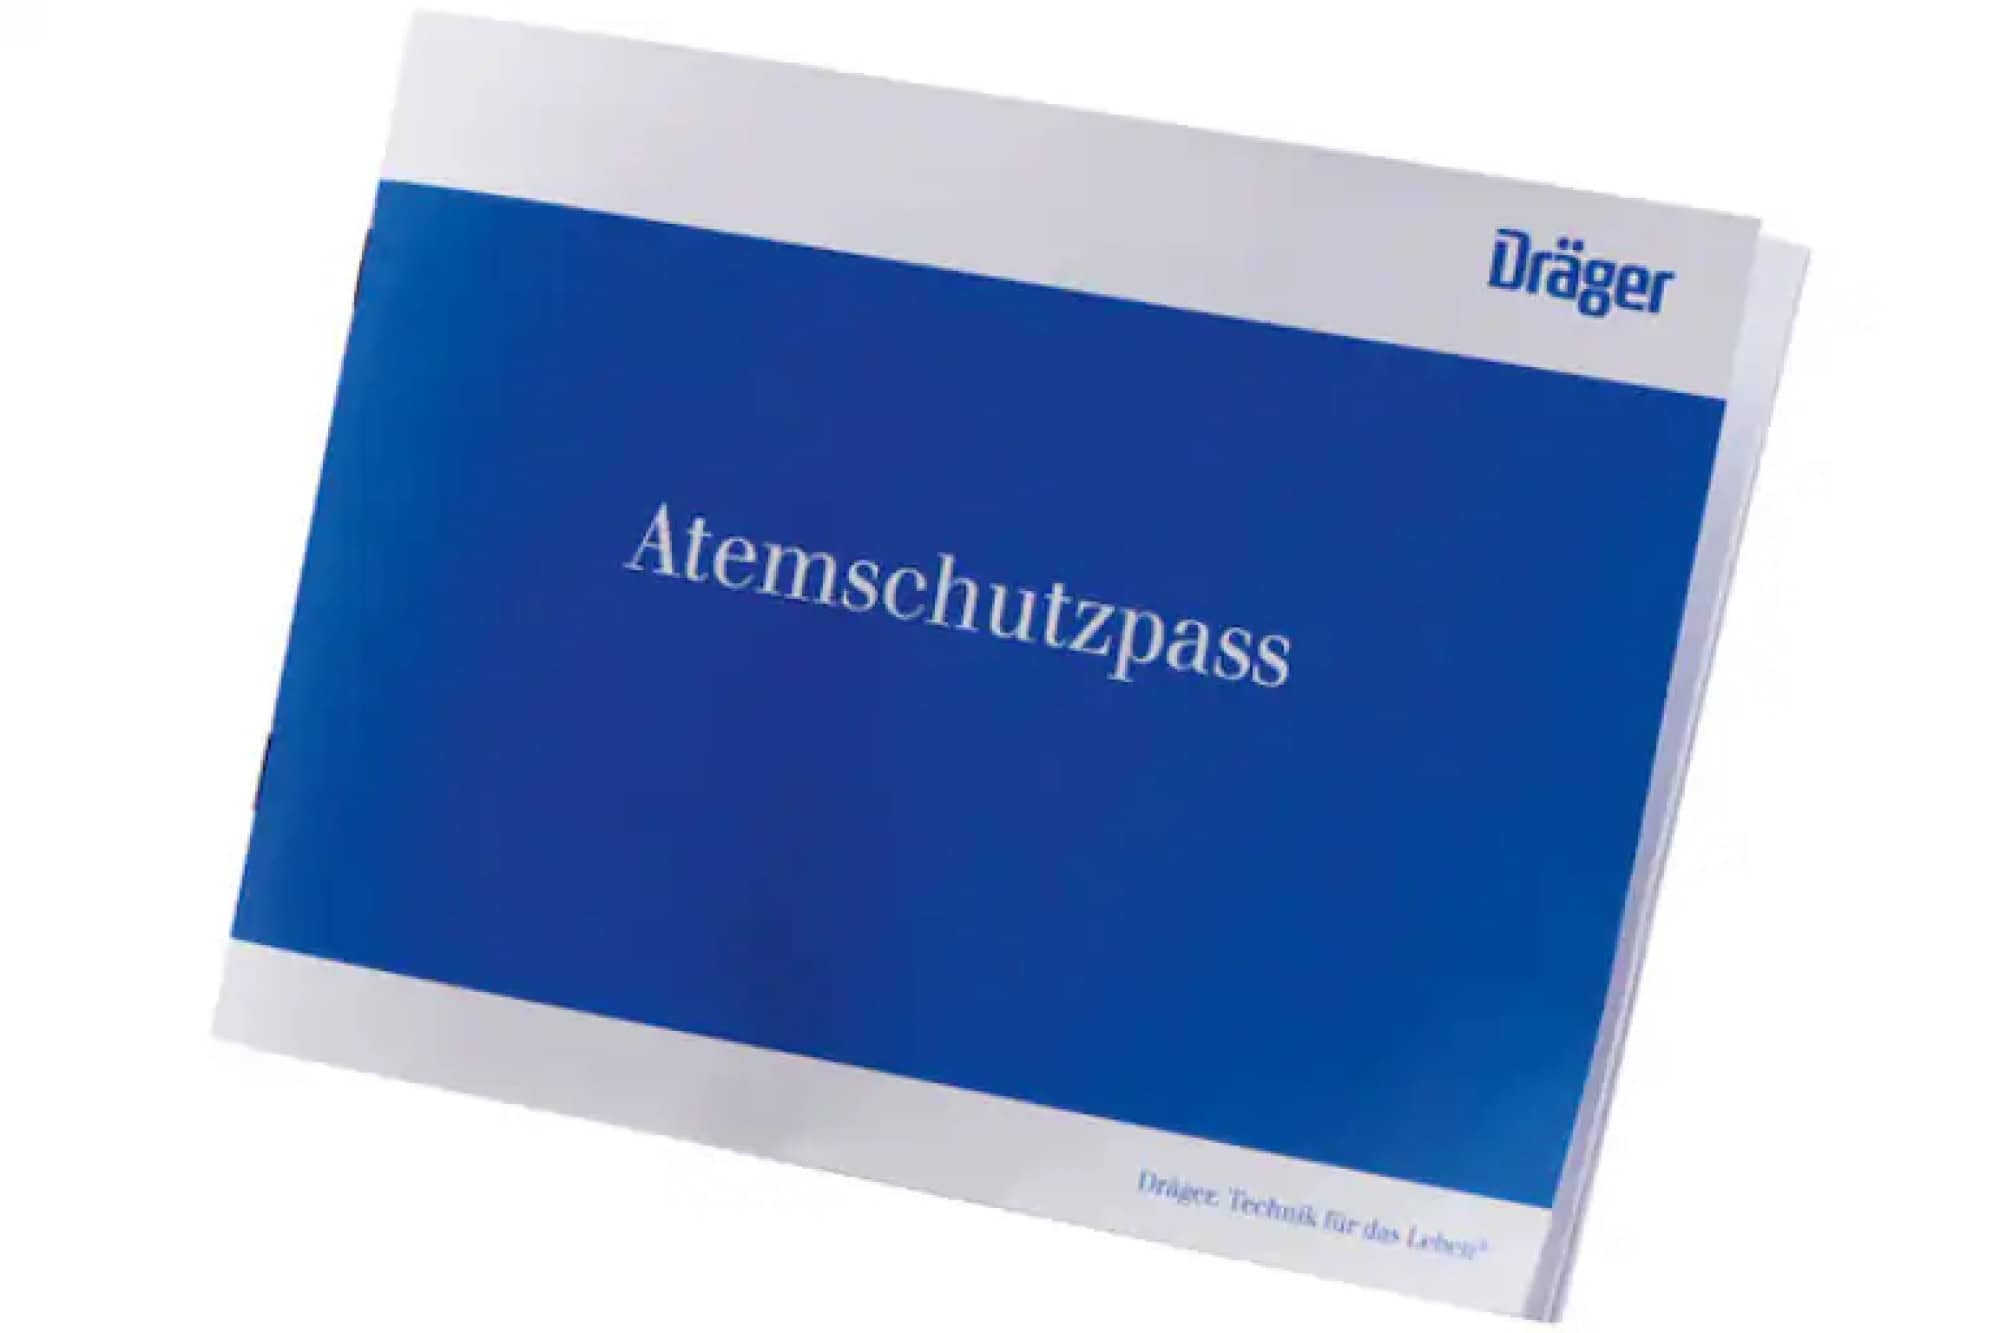 Dräger® Atemschutzpass 2305150, Für effiziente Dokumentation und Verwaltung der Atemschutzgeräte Träger